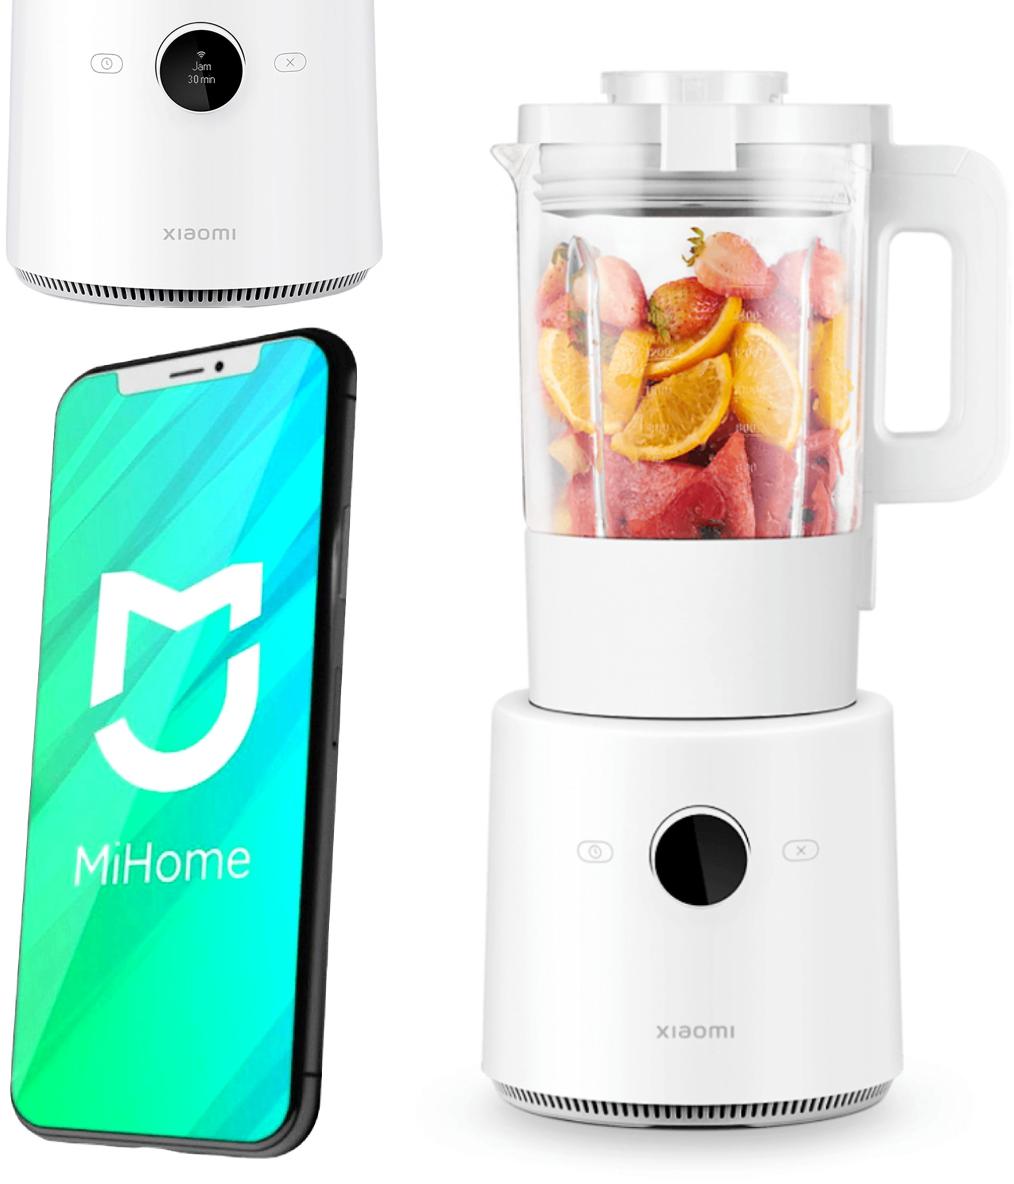 Inteligentny blender Xiaomi Smart Blender EU - najważniejsze cechy urządzenia kuchennego: